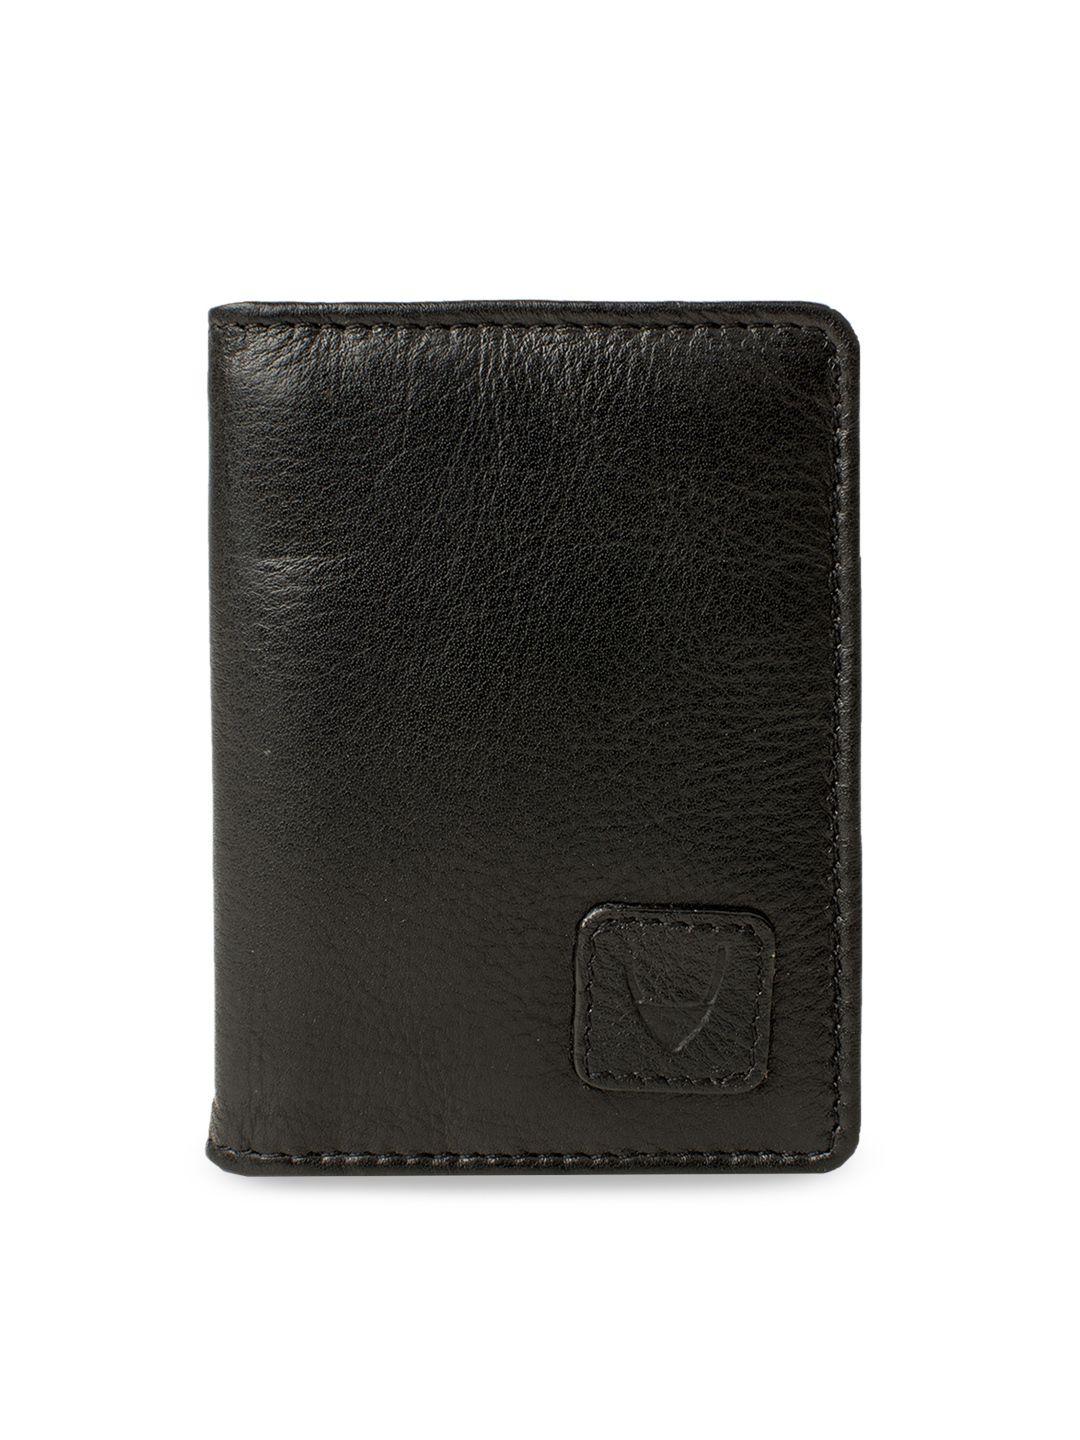 hidesign men black textured leather card holder